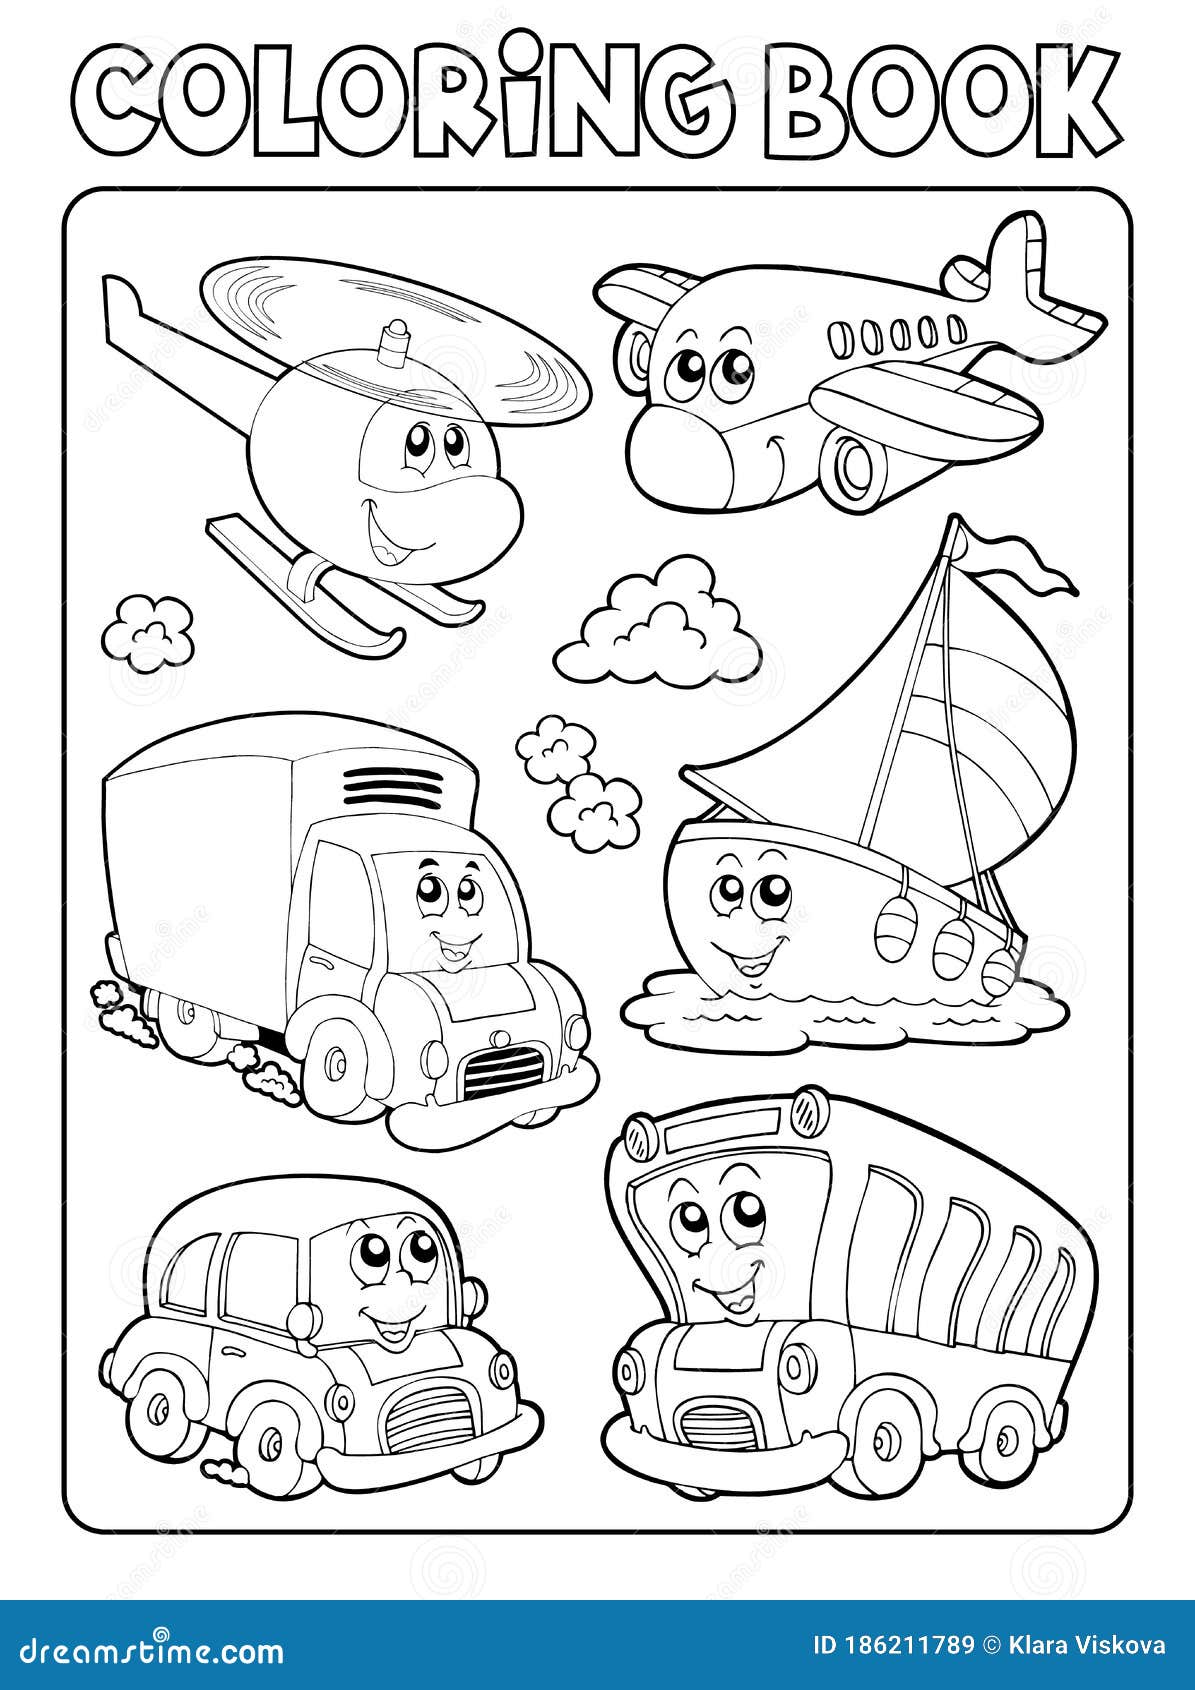 Transportation coloring book stock illustrations â transportation coloring book stock illustrations vectors clipart